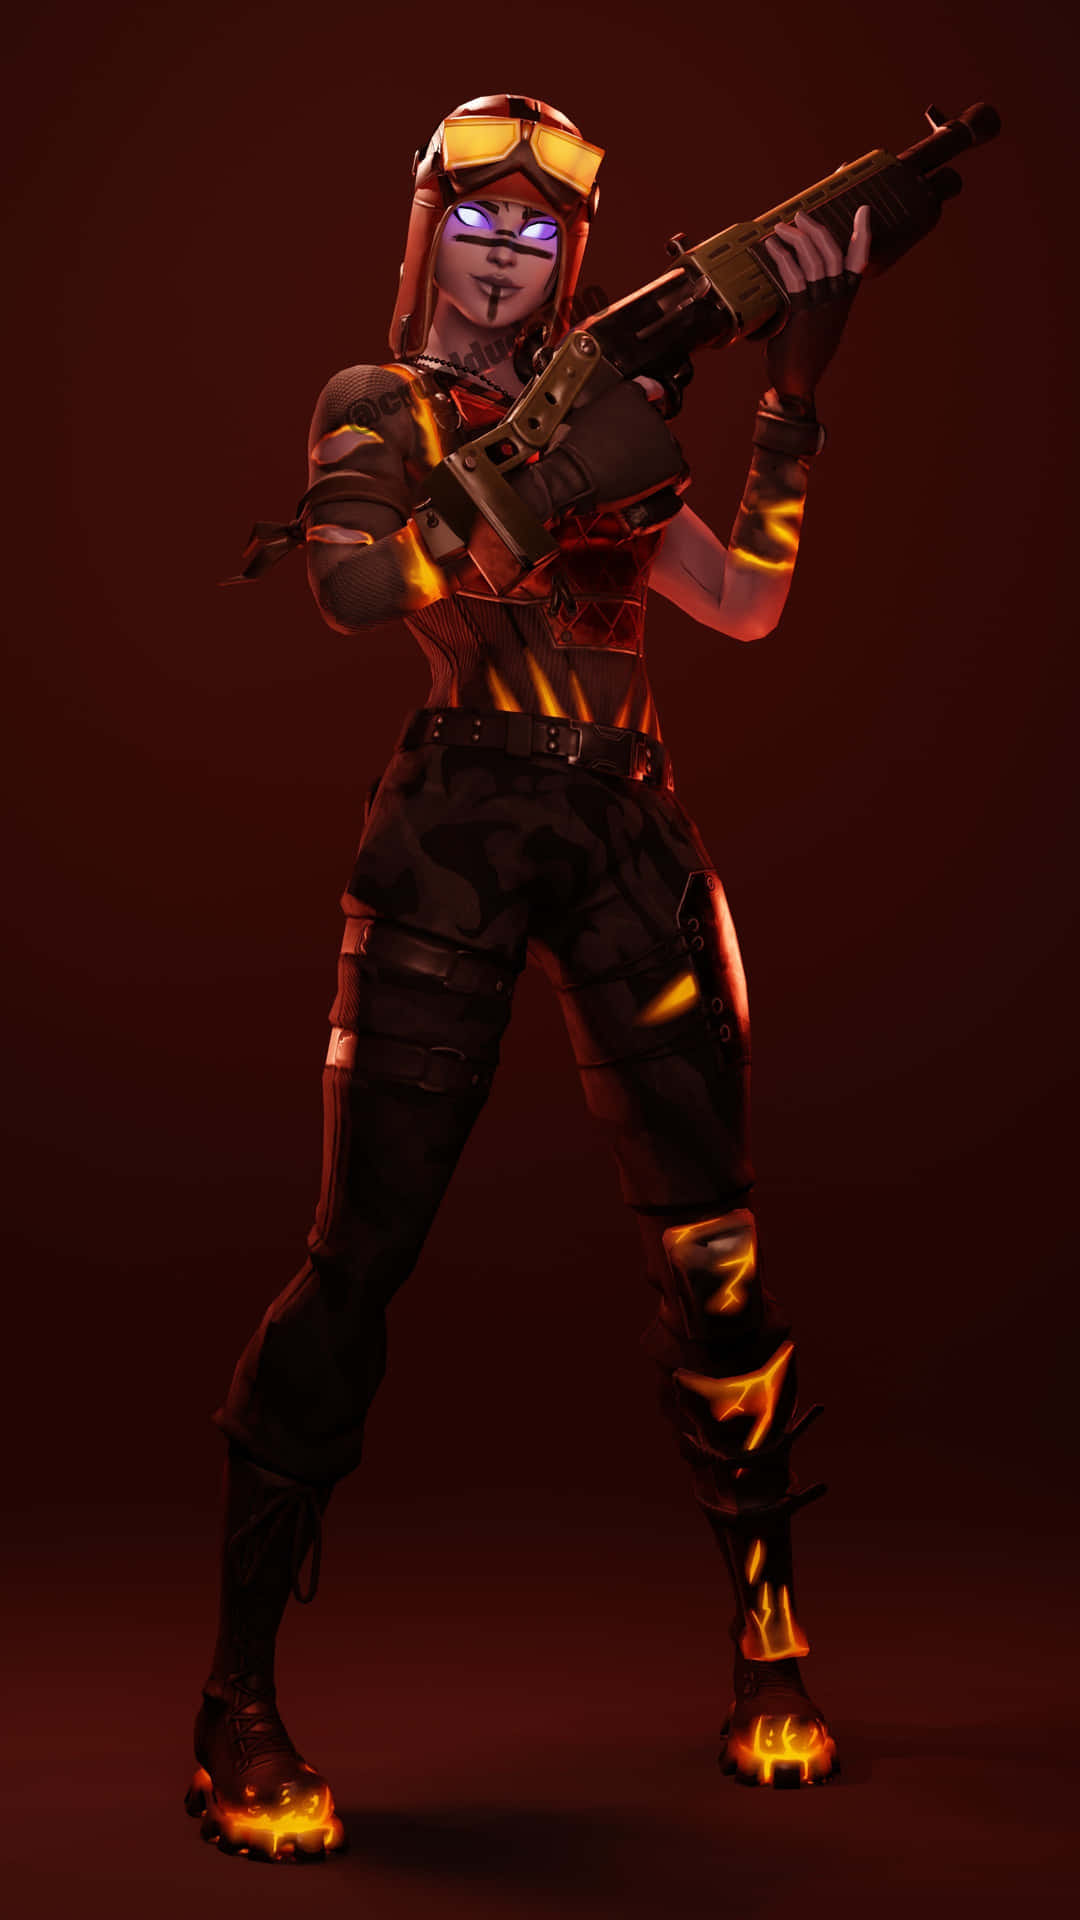 Blaze Fortnite Outfit Brandishing Her Gun Wallpaper